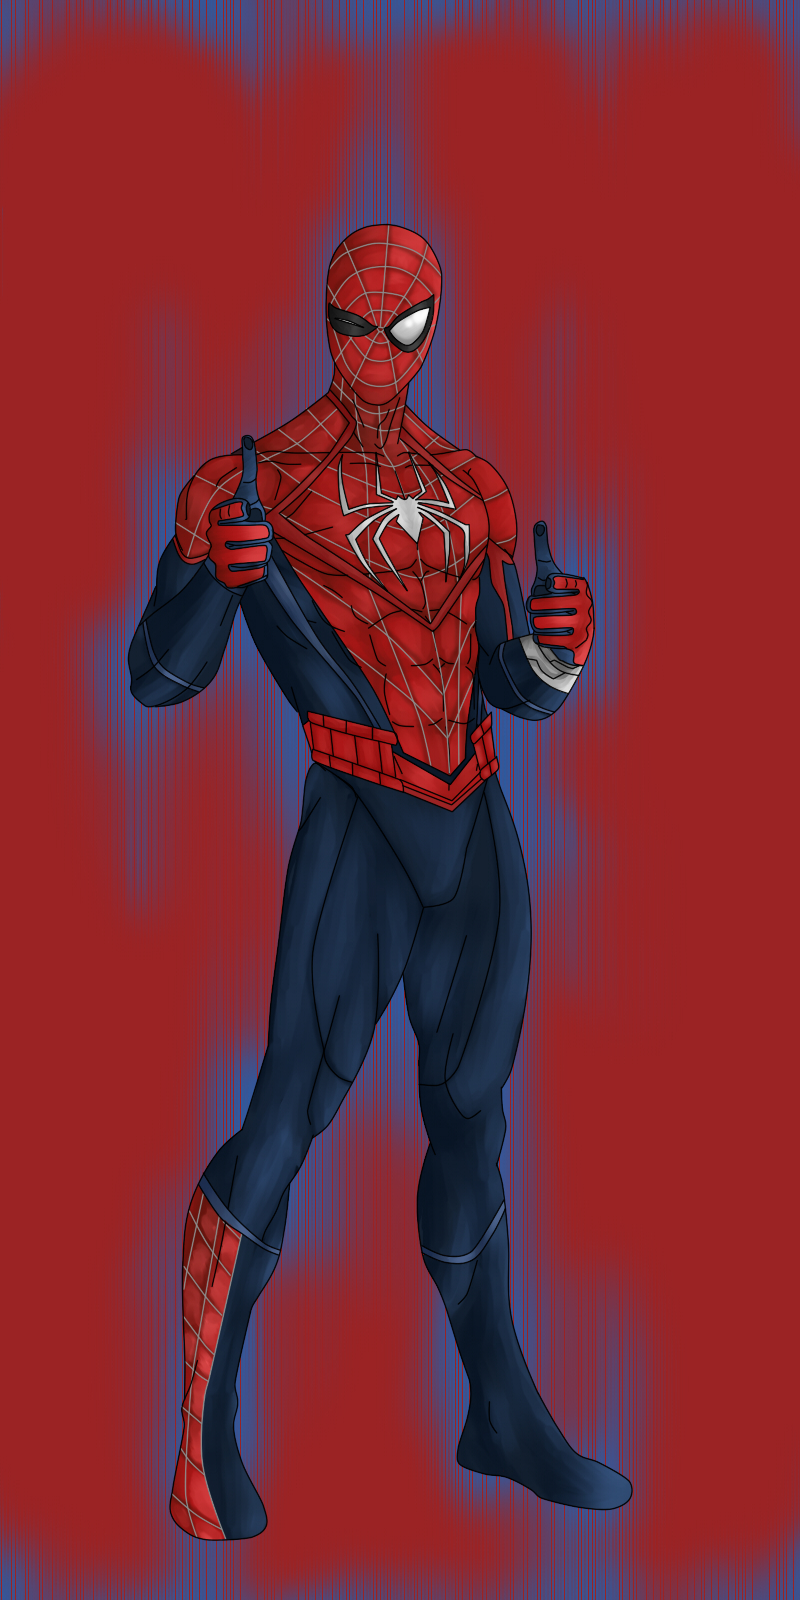 Spider-Ben Suit [Spider-Man Remastered Mod] by AngelsModz on DeviantArt